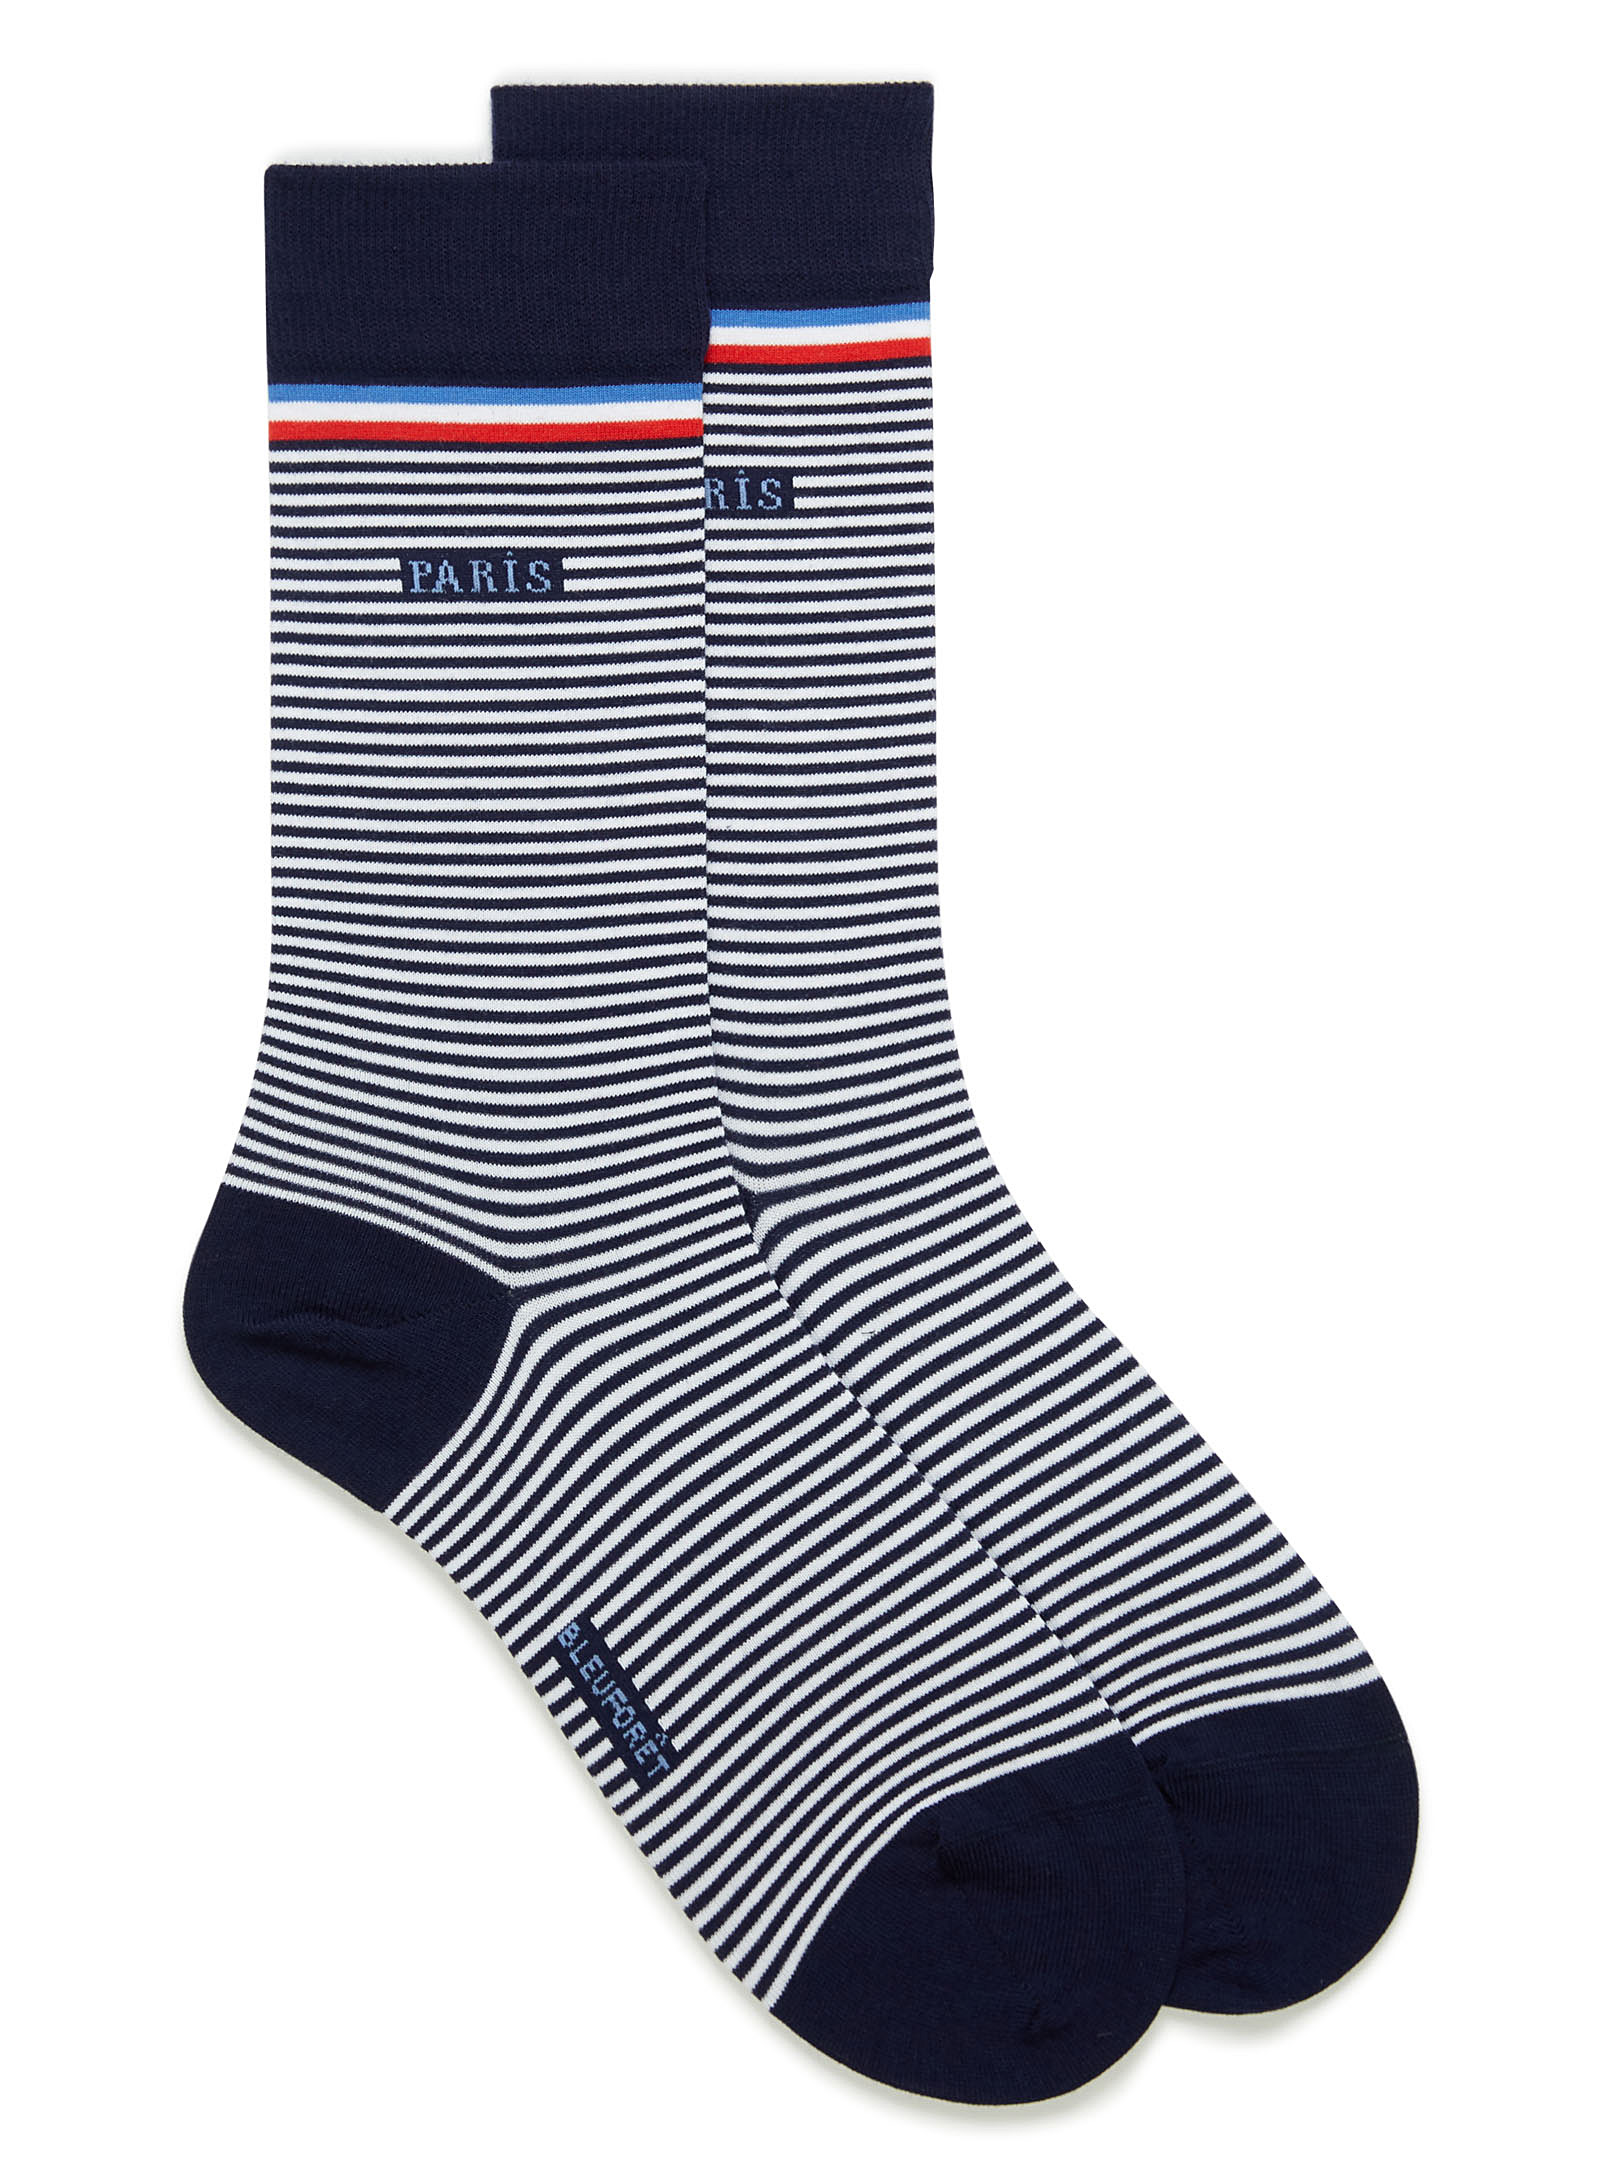 Bleuforêt Sailor Stripe Paris Socks In Patterned Blue